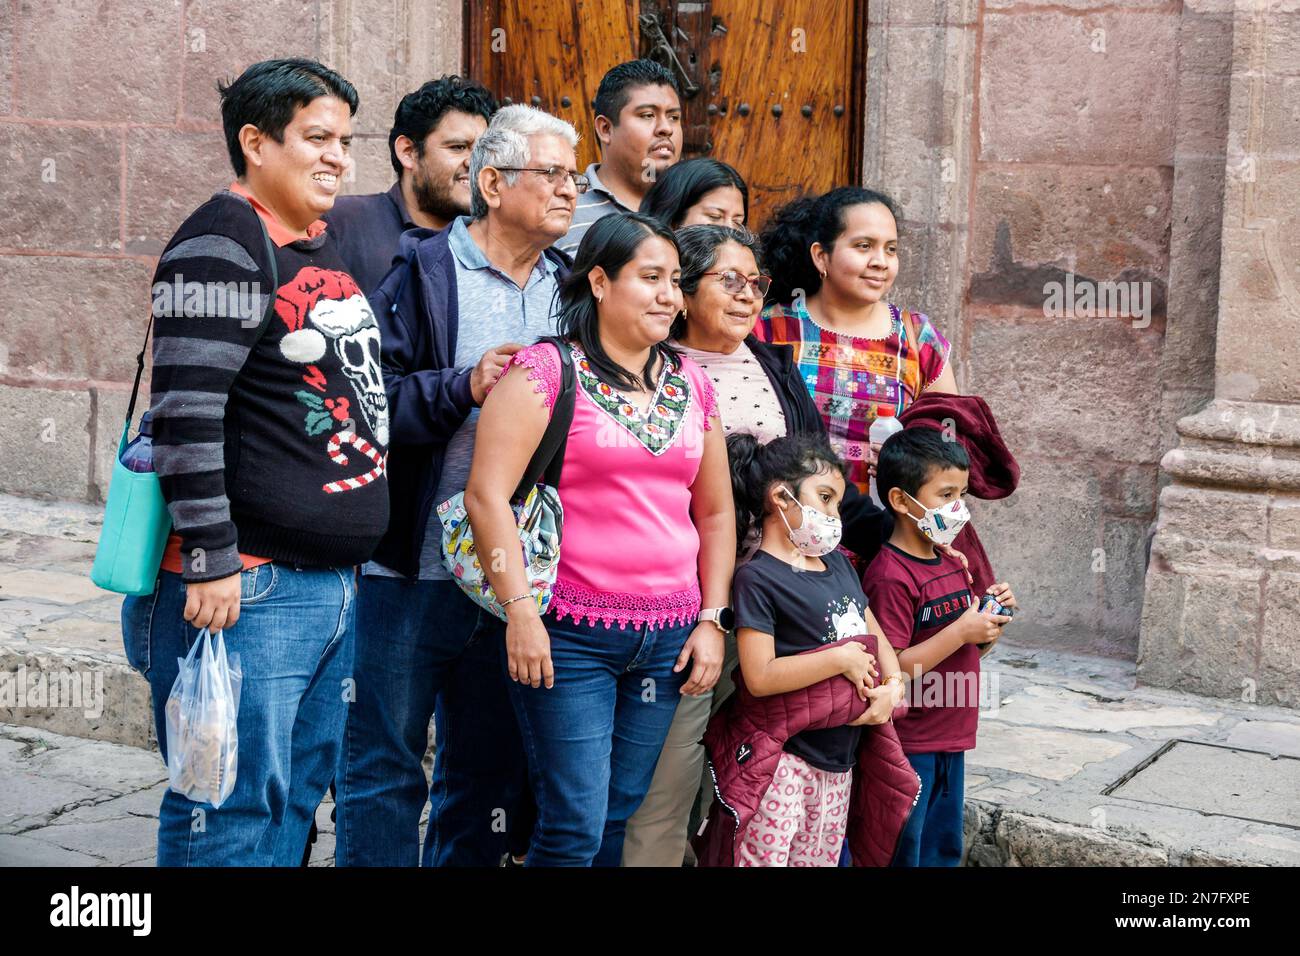 San Miguel de Allende Guanajuato Messico, Historico Centro storico zona Centro, uomo in posa maschio, donna donna donna donna donna donna donna donna donna, adulti, residenza Foto Stock